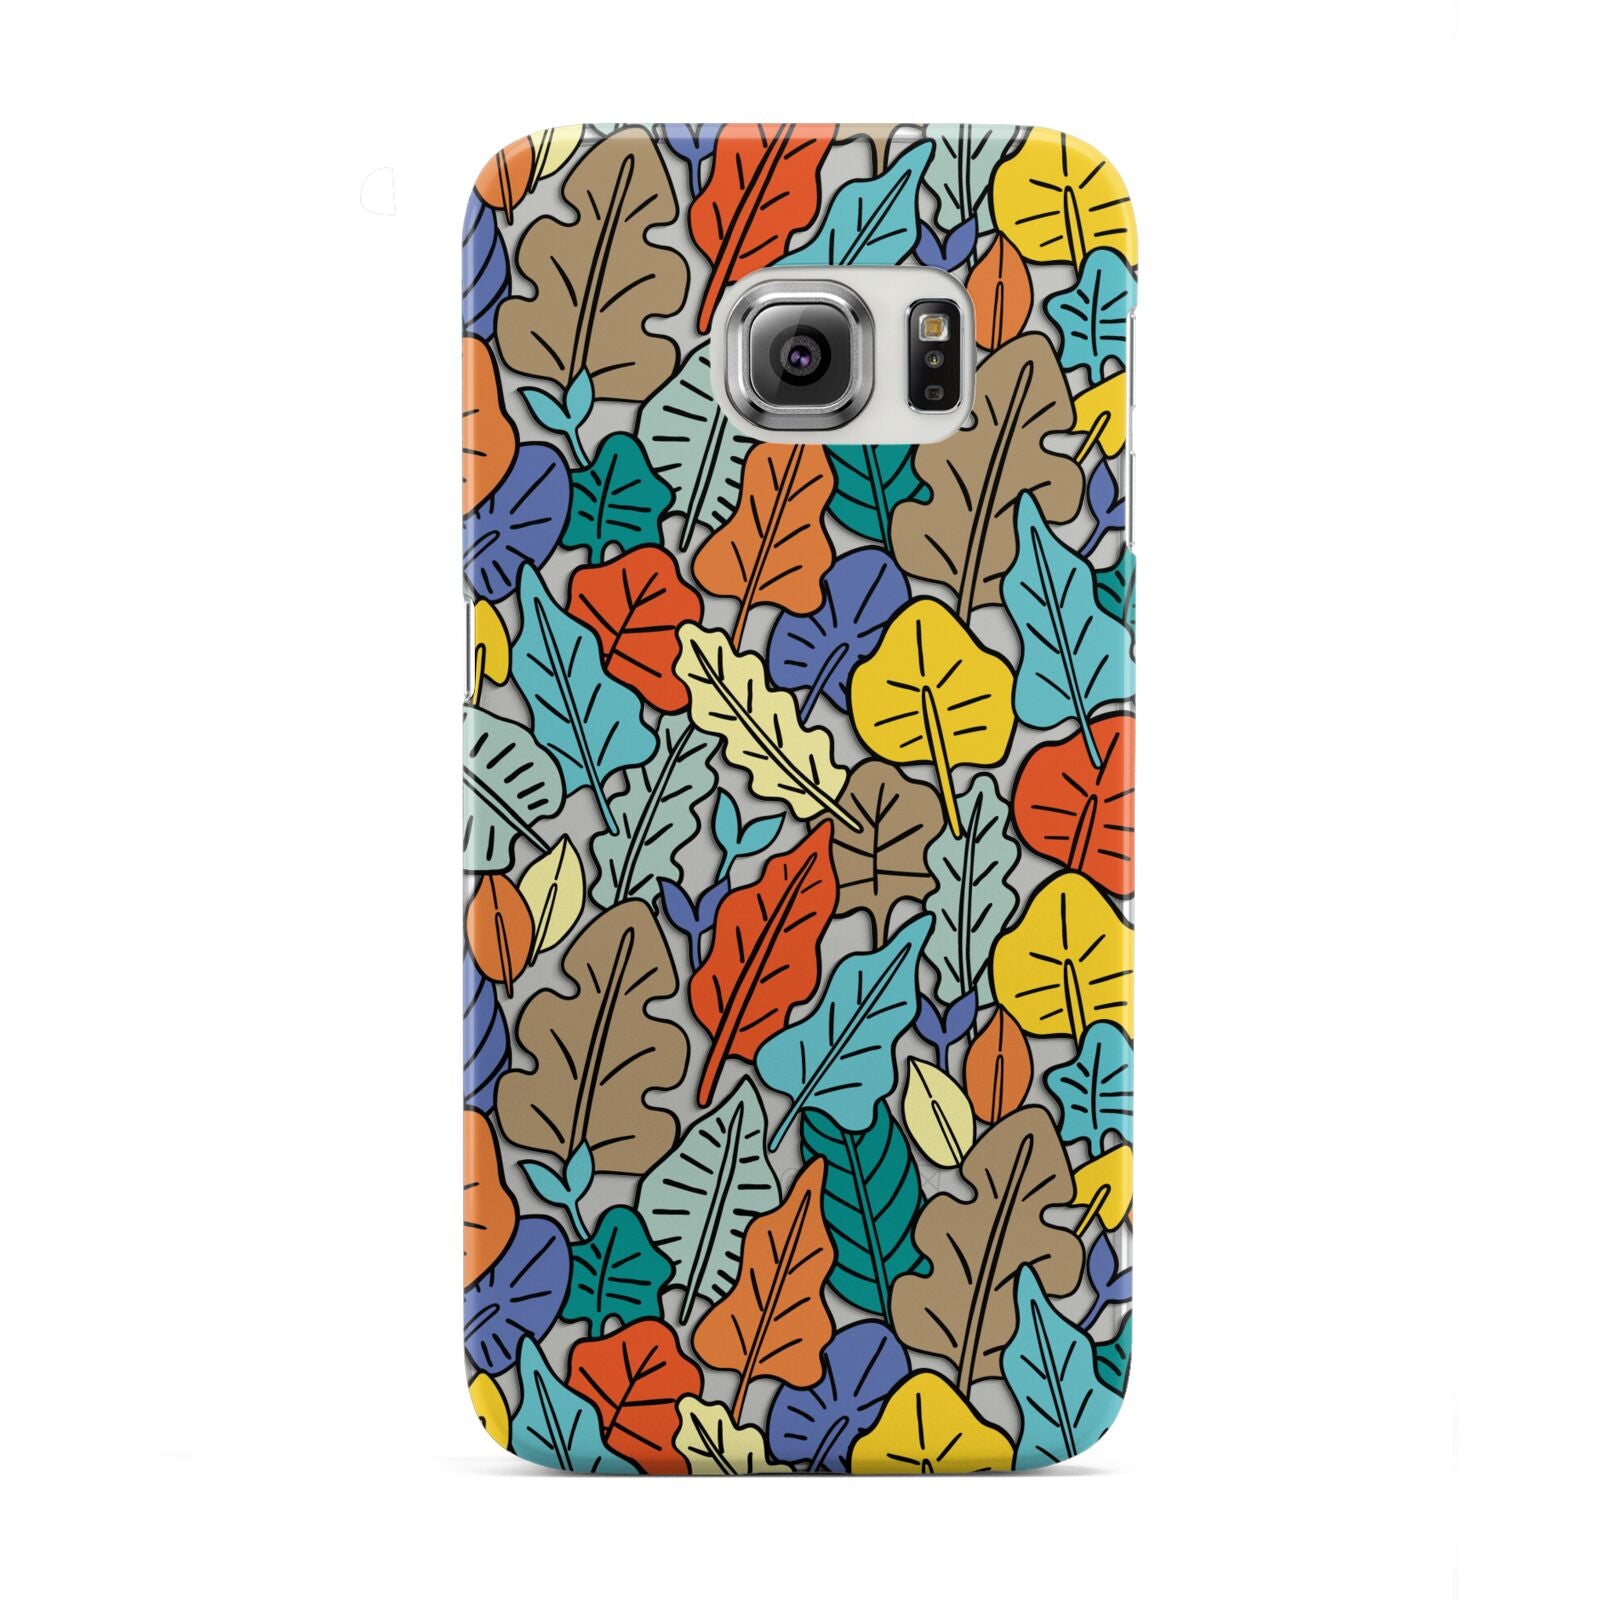 Autumn Leaves Samsung Galaxy S6 Edge Case